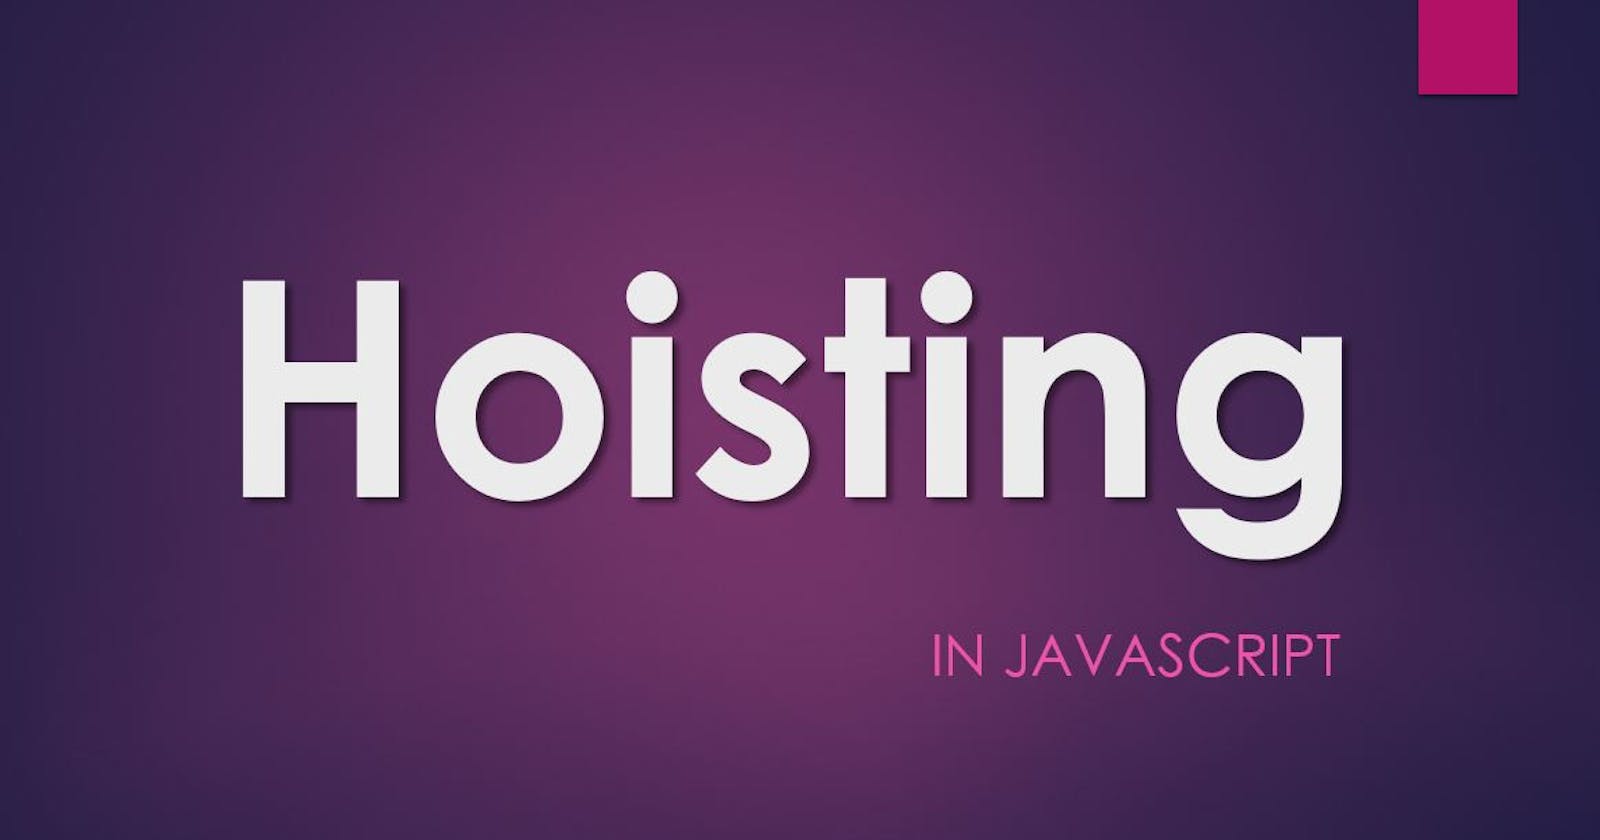 Understanding Hoisting - A Weird Behavior of JavaScript 😬